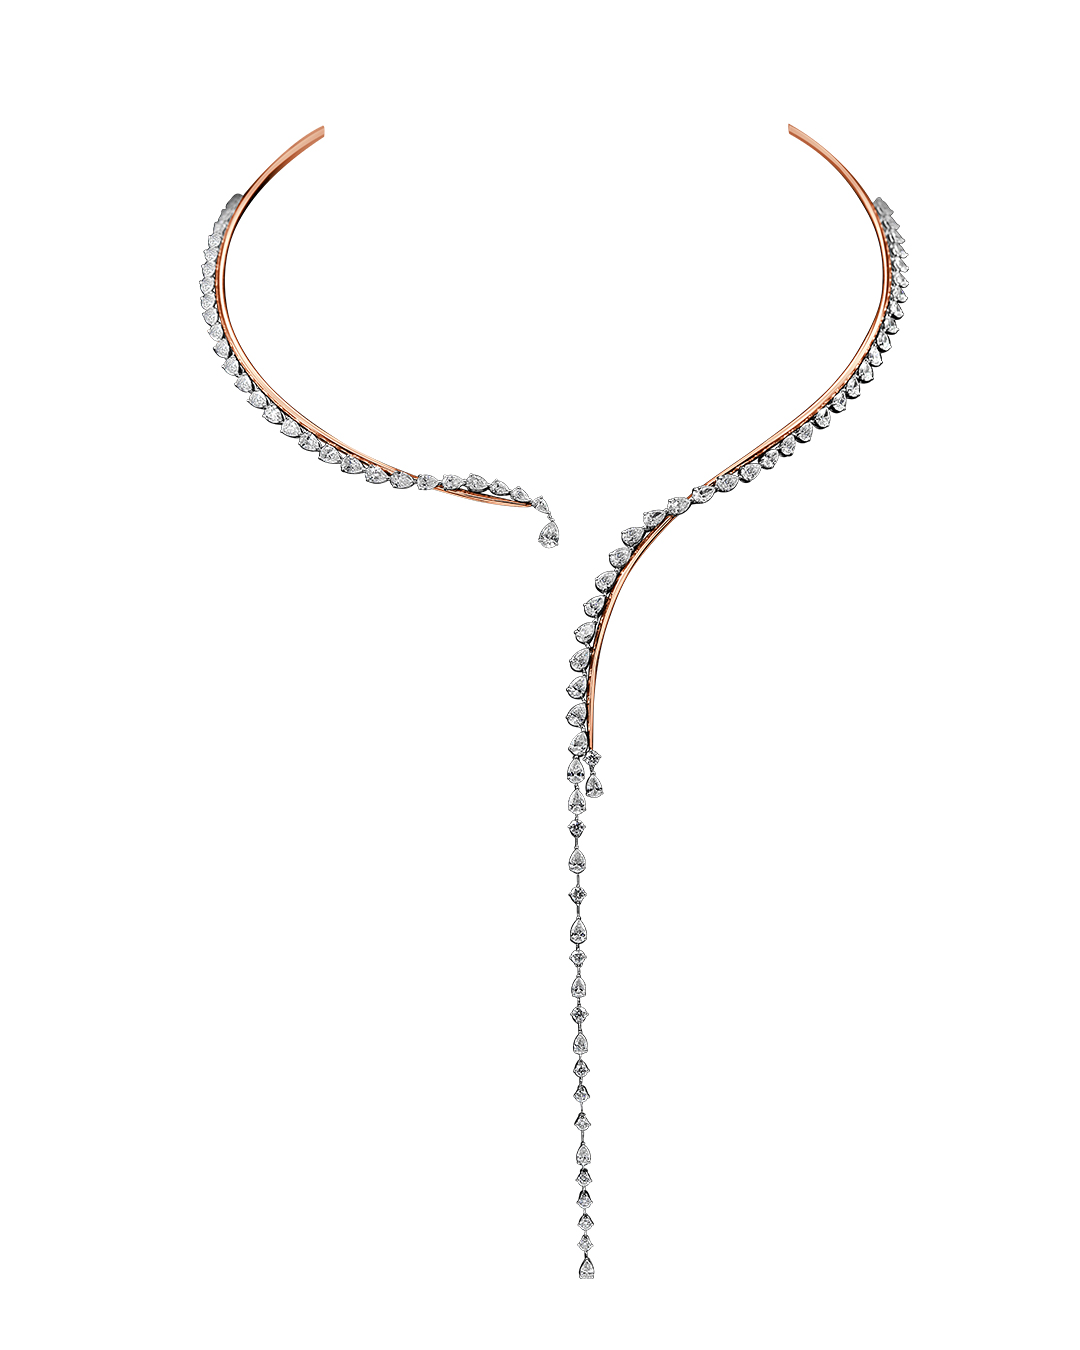 Minimalist diamond choker necklace